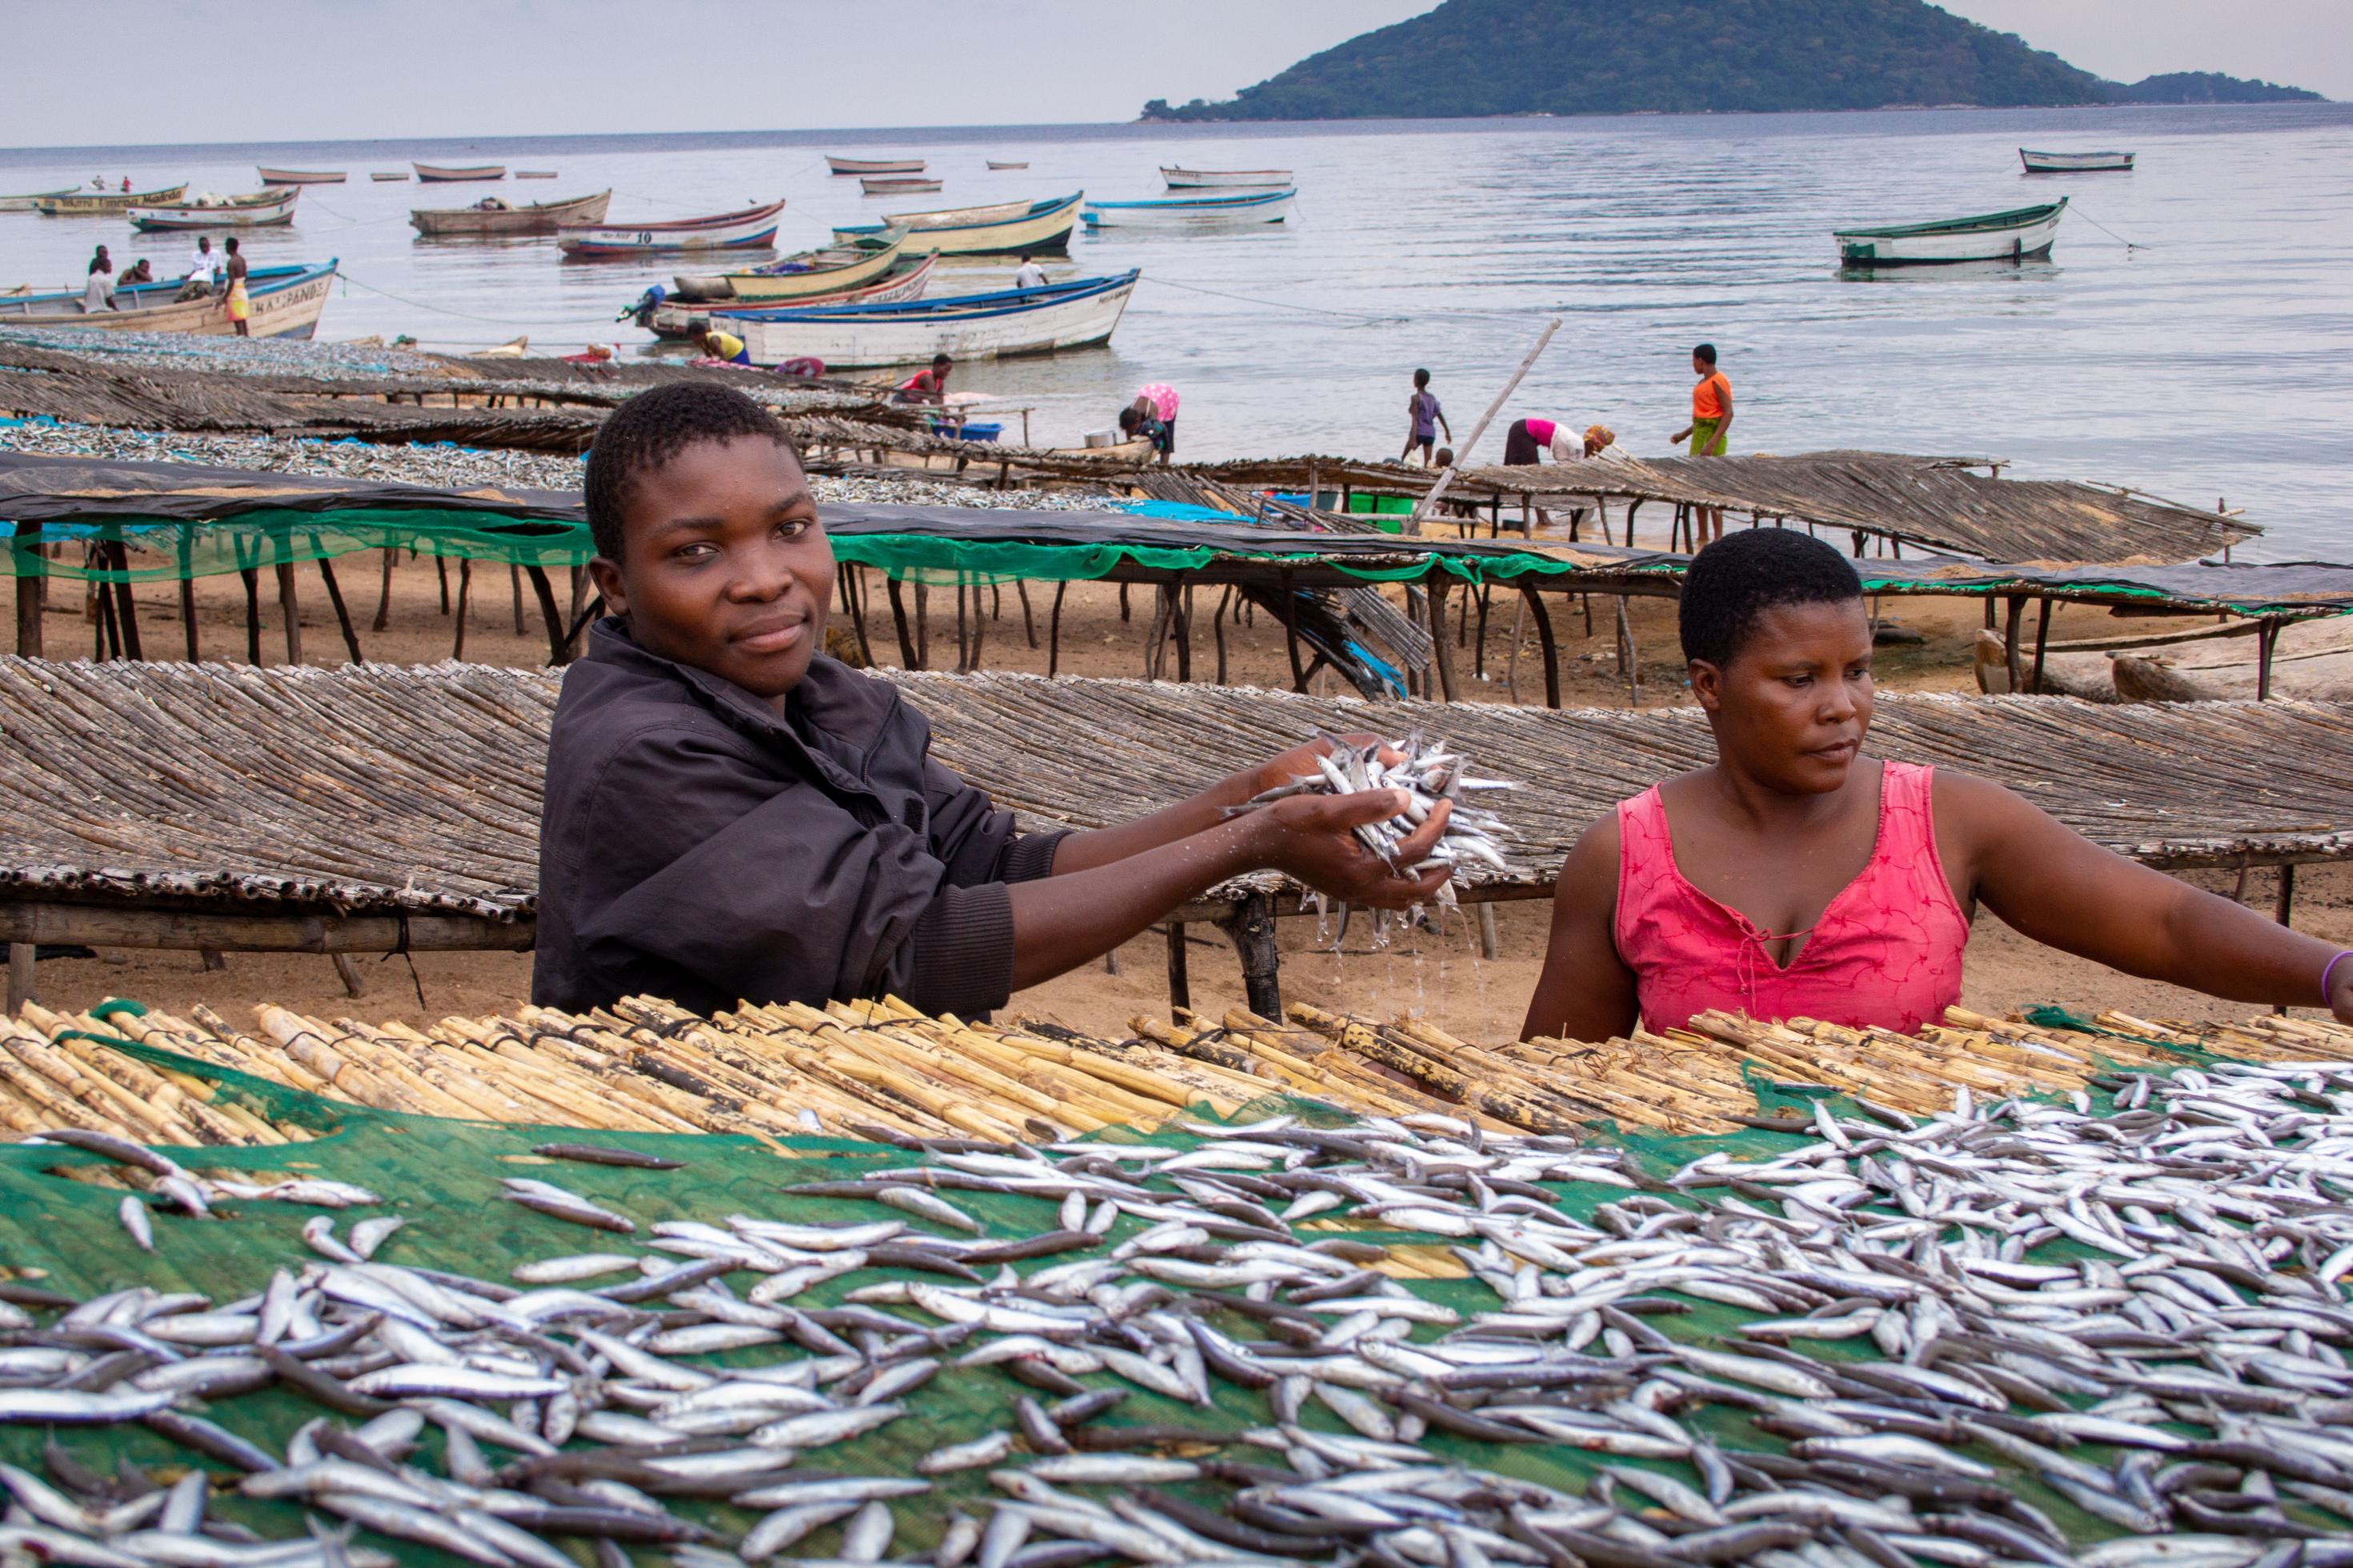 Der Fischer Sitefano und seine Tante Kafirini trocknen Fische am Ufer des Viktoria-Sees in Malawi. Vor ihnen auf einem Gestell ist der Fang des Tages ausgebreitet, tausende kleiner, silbrige Fische.